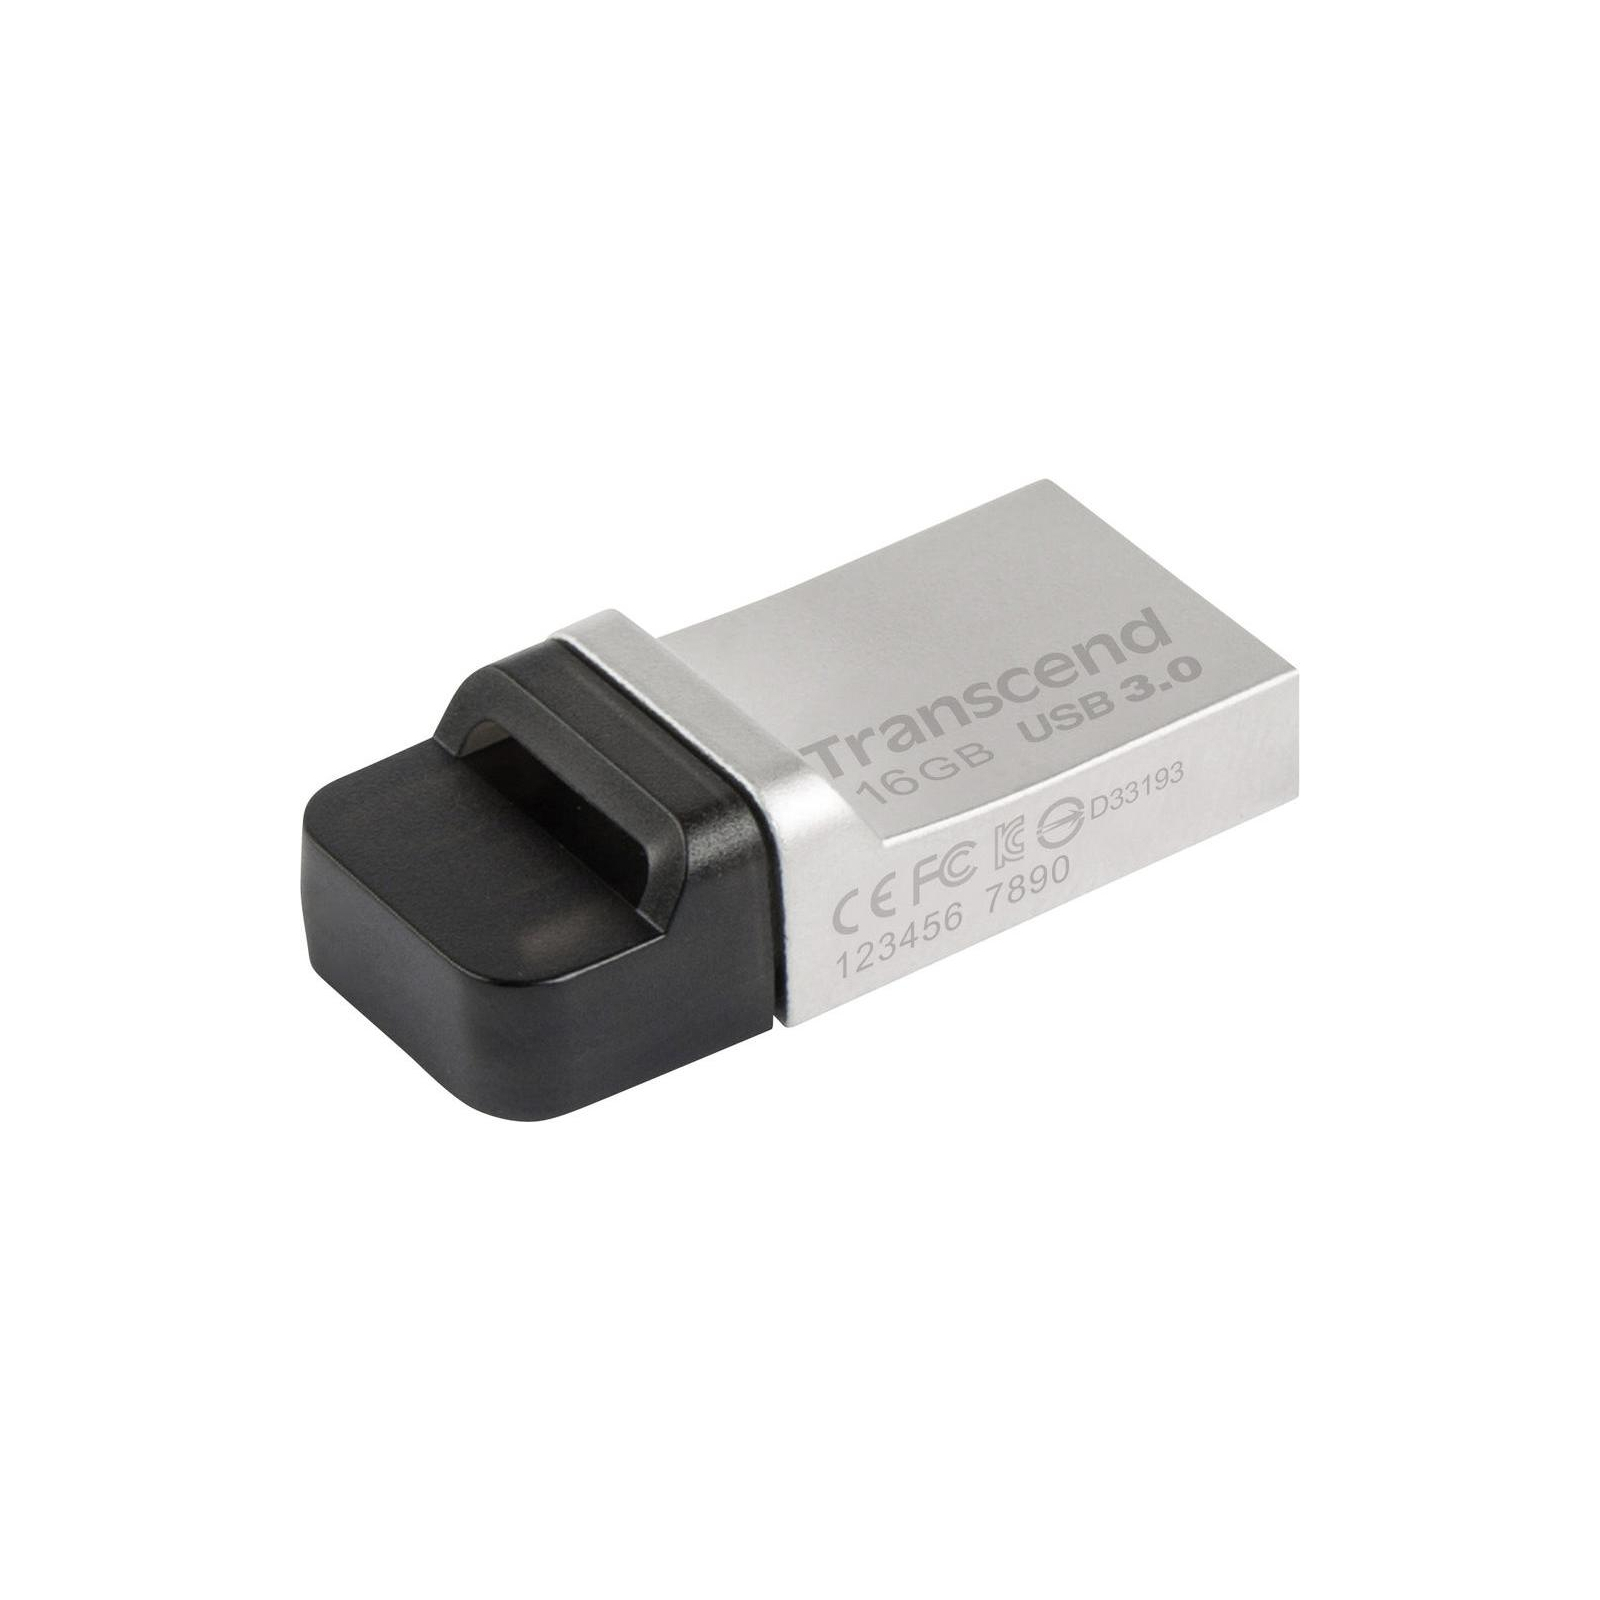 USB флеш накопитель Transcend 16GB JetFlash OTG 880 Metal Silver USB 3.0 (TS16GJF880S)